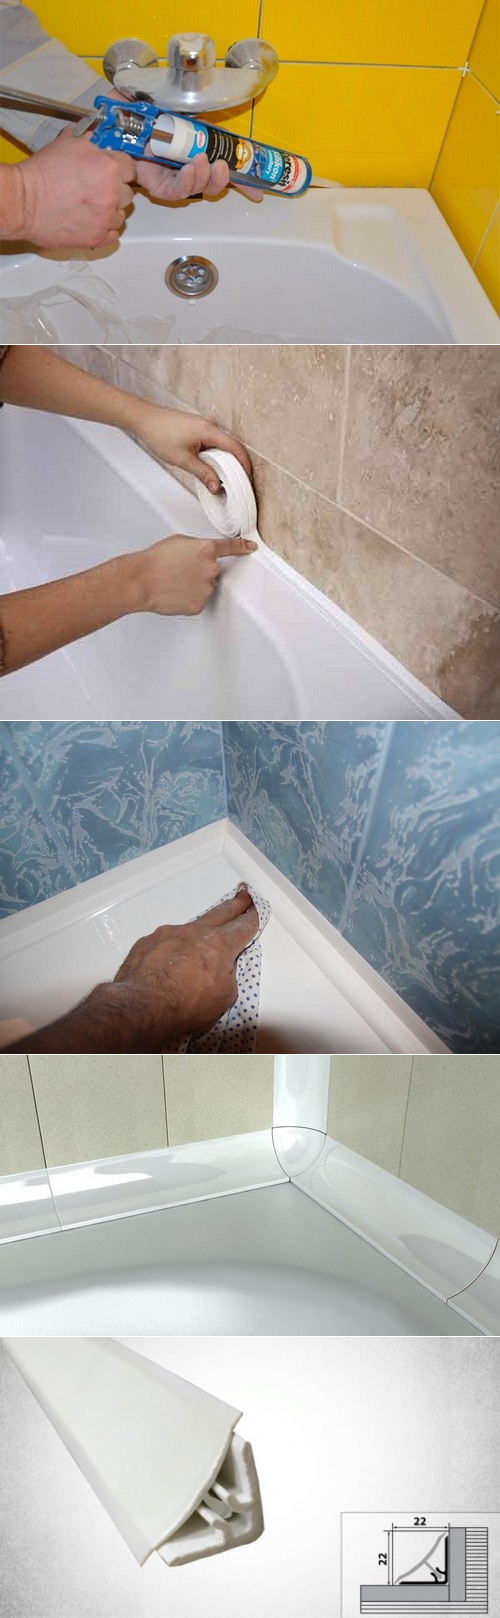 Герметизация ванны по периметру со стеной и видео